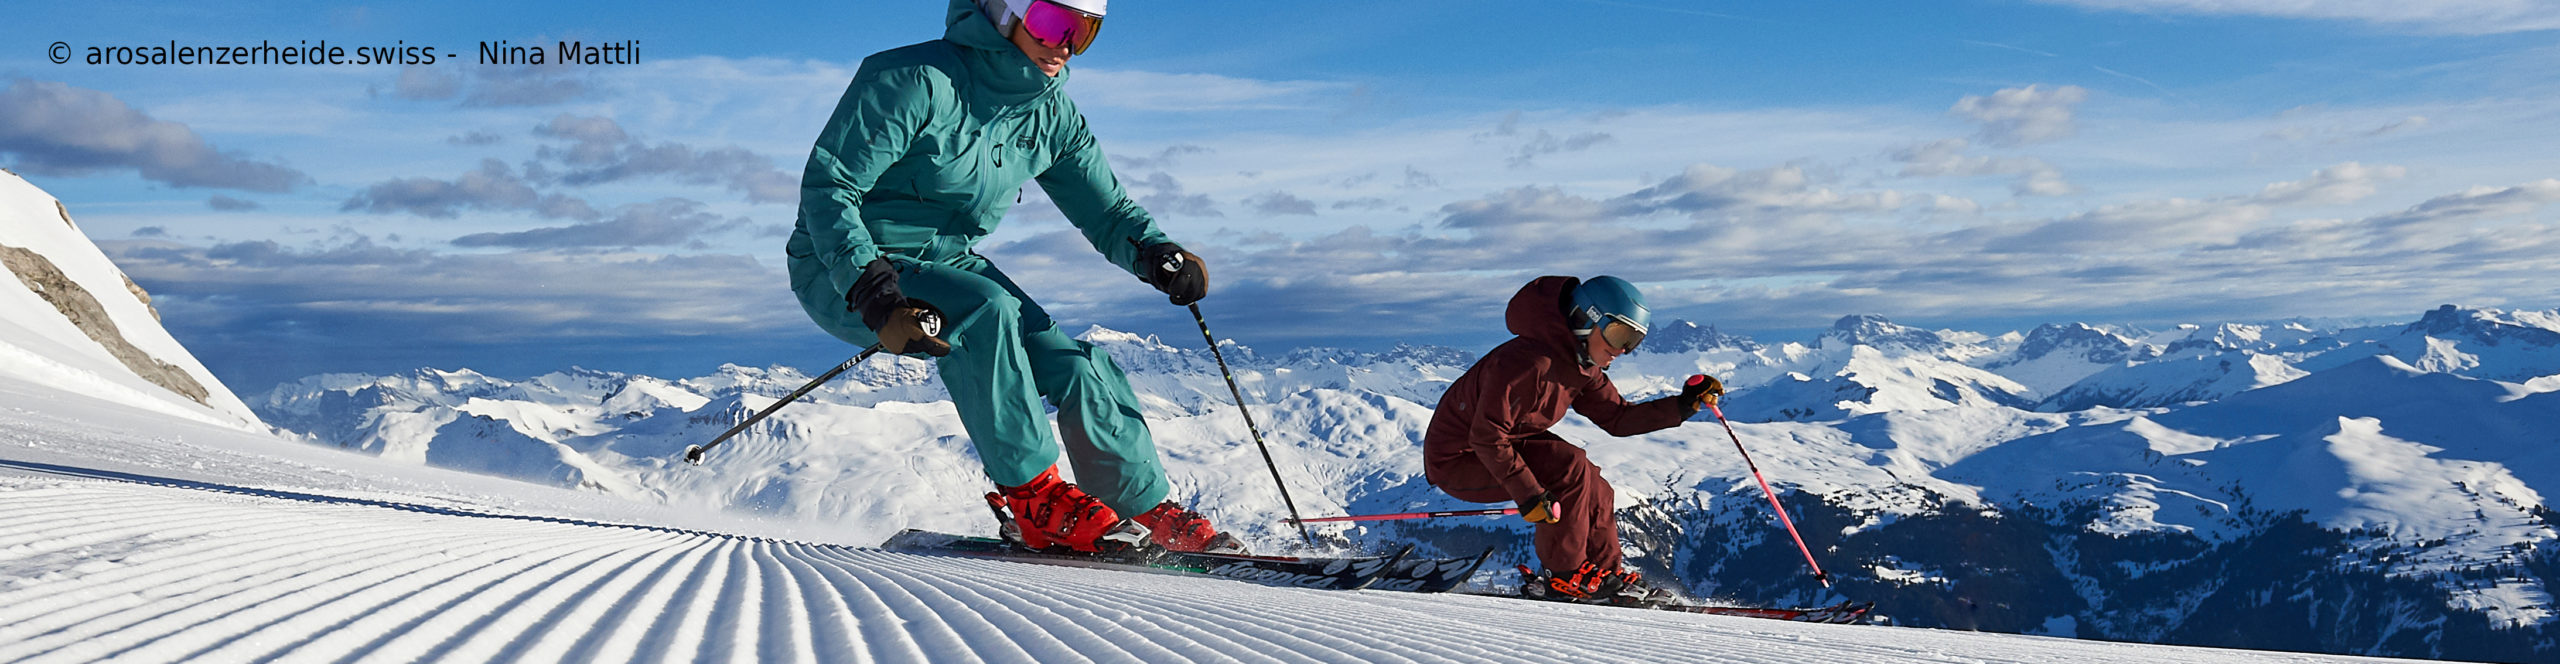 AROSA – LENZERHEIDE – SCHWEIZ – Weltcuport zum Sparpreis – 3 Skitage 2 Übernachtungen inkl. Skipass – ab Freitag 